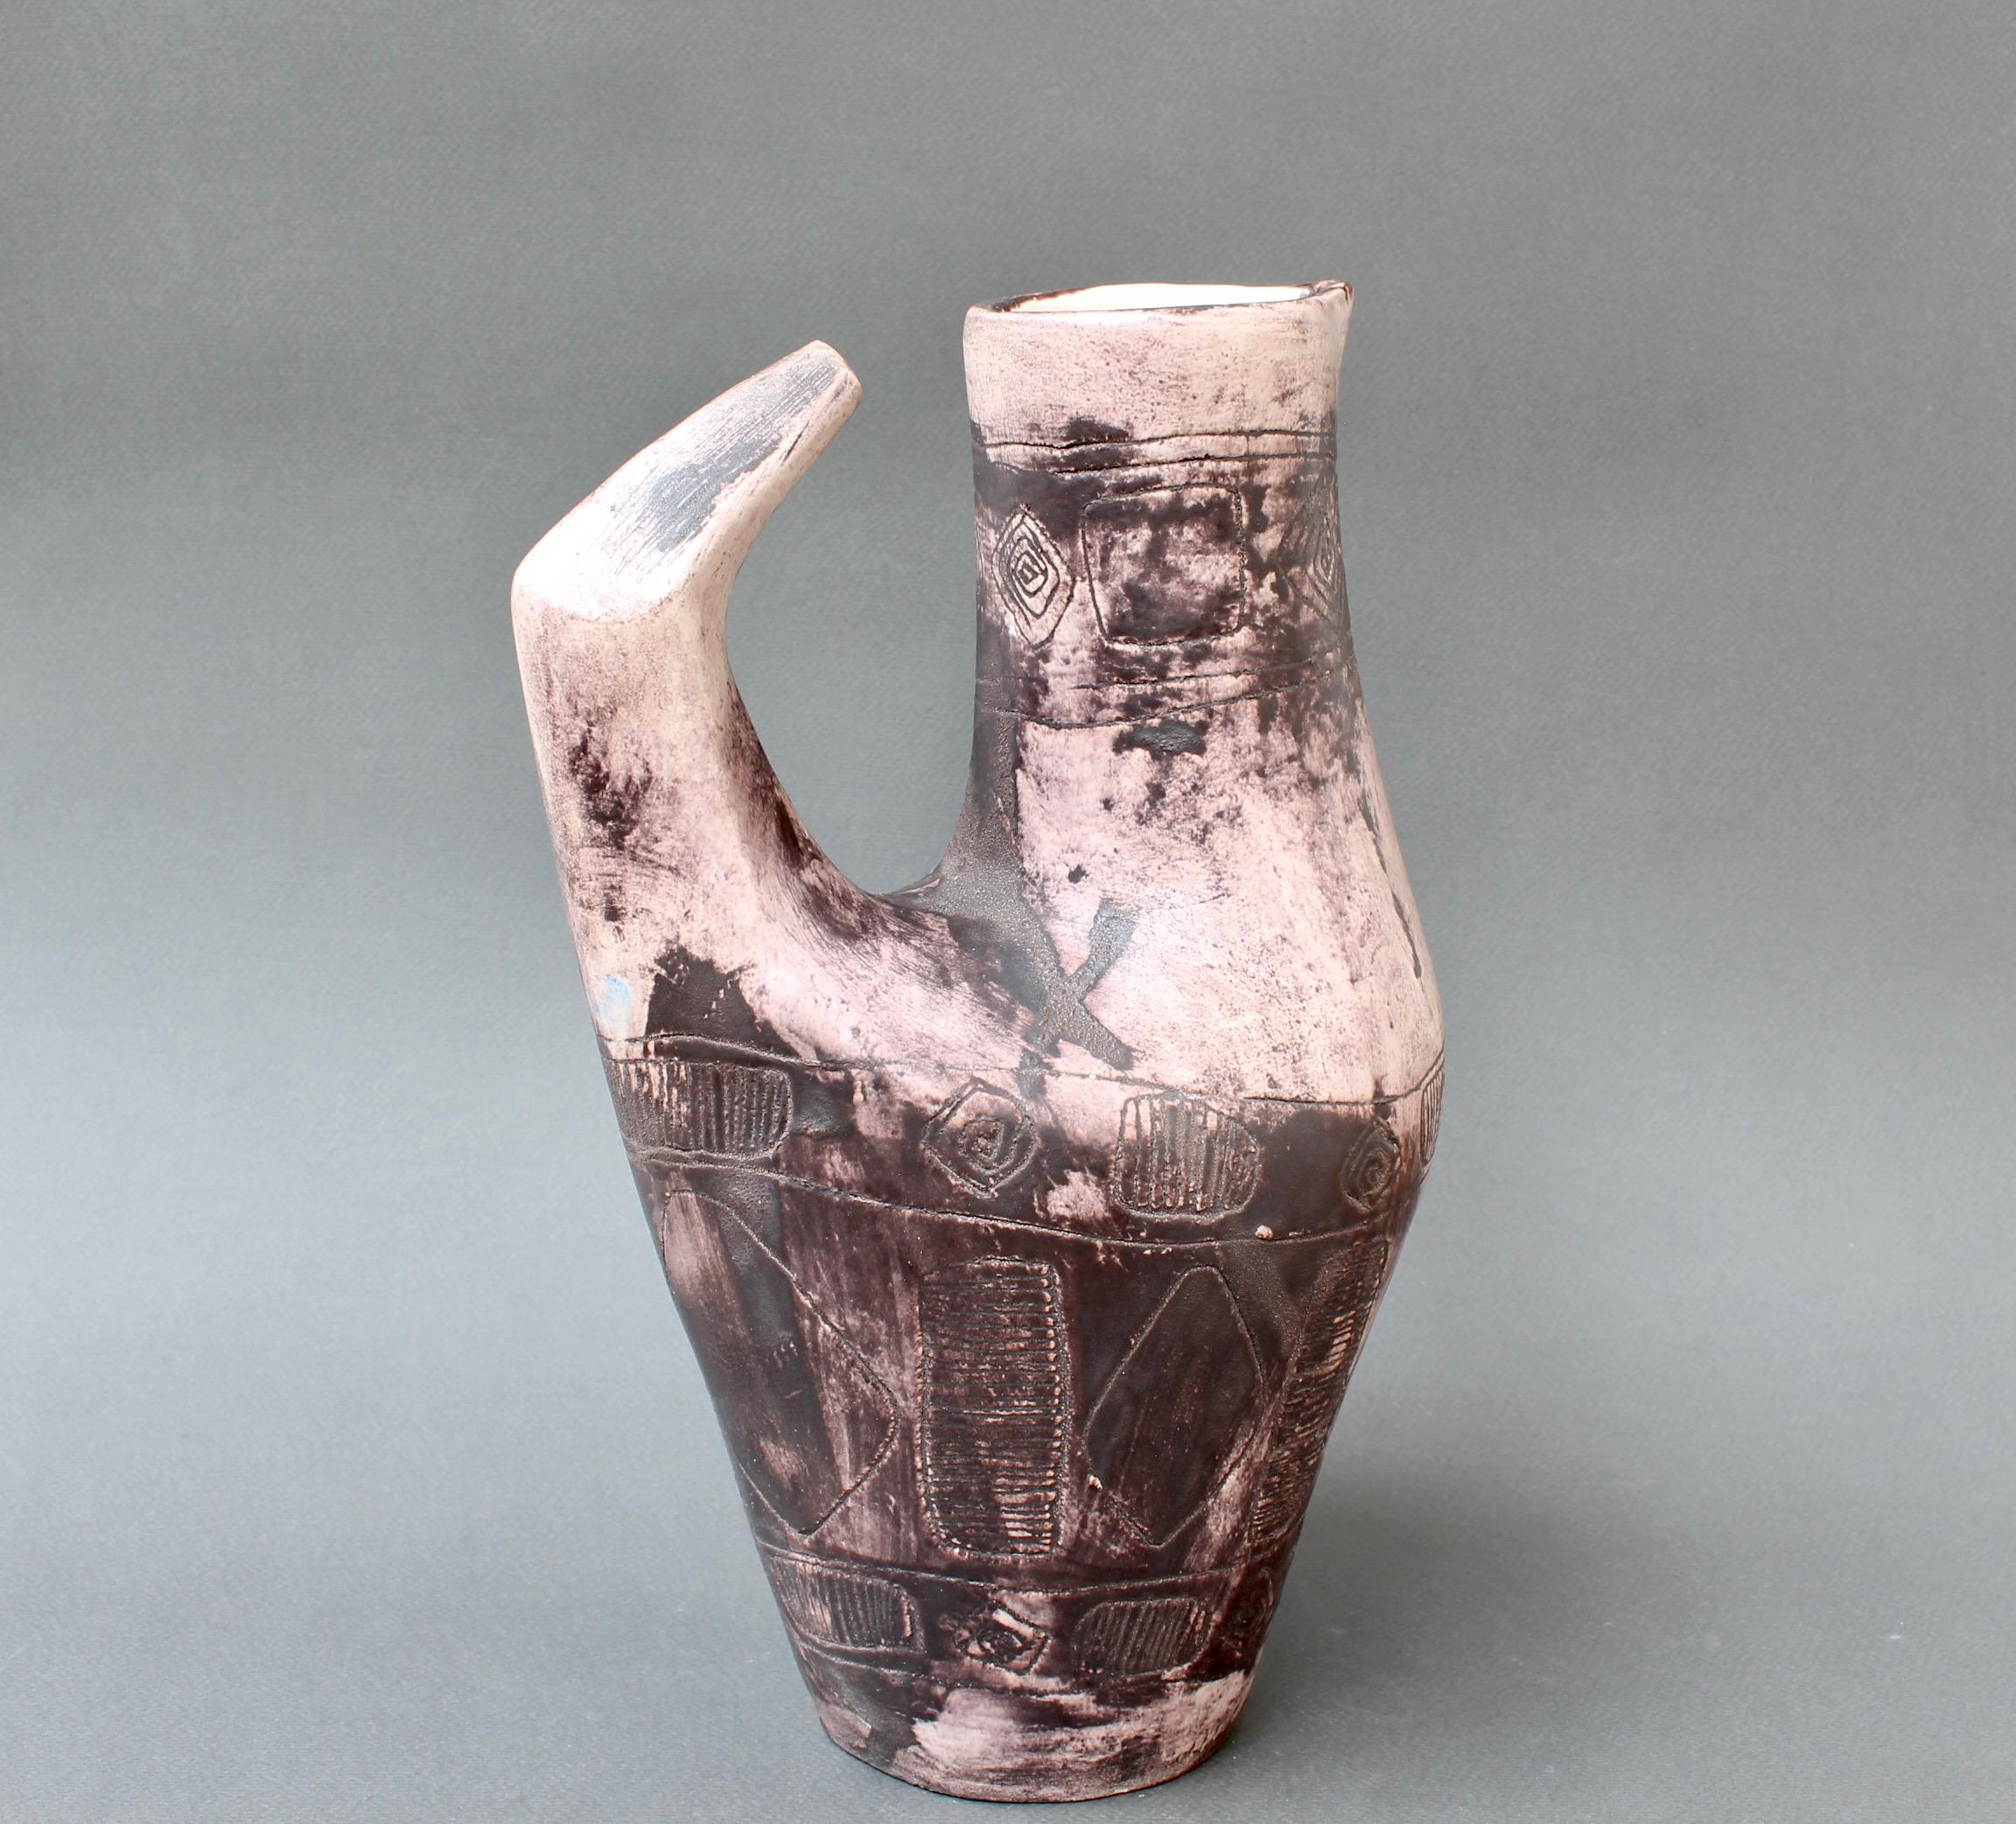 Dekorativer französischer Keramikkrug / Dekanter / Vase (ca. 1950er Jahre) von Jacques Blin. Die Vase ist in einem zarten Aubergine-Ton gehalten und mit der für Blin typischen nebligen Glasur überzogen. Es ist mit mehreren Bändern aus geometrischen